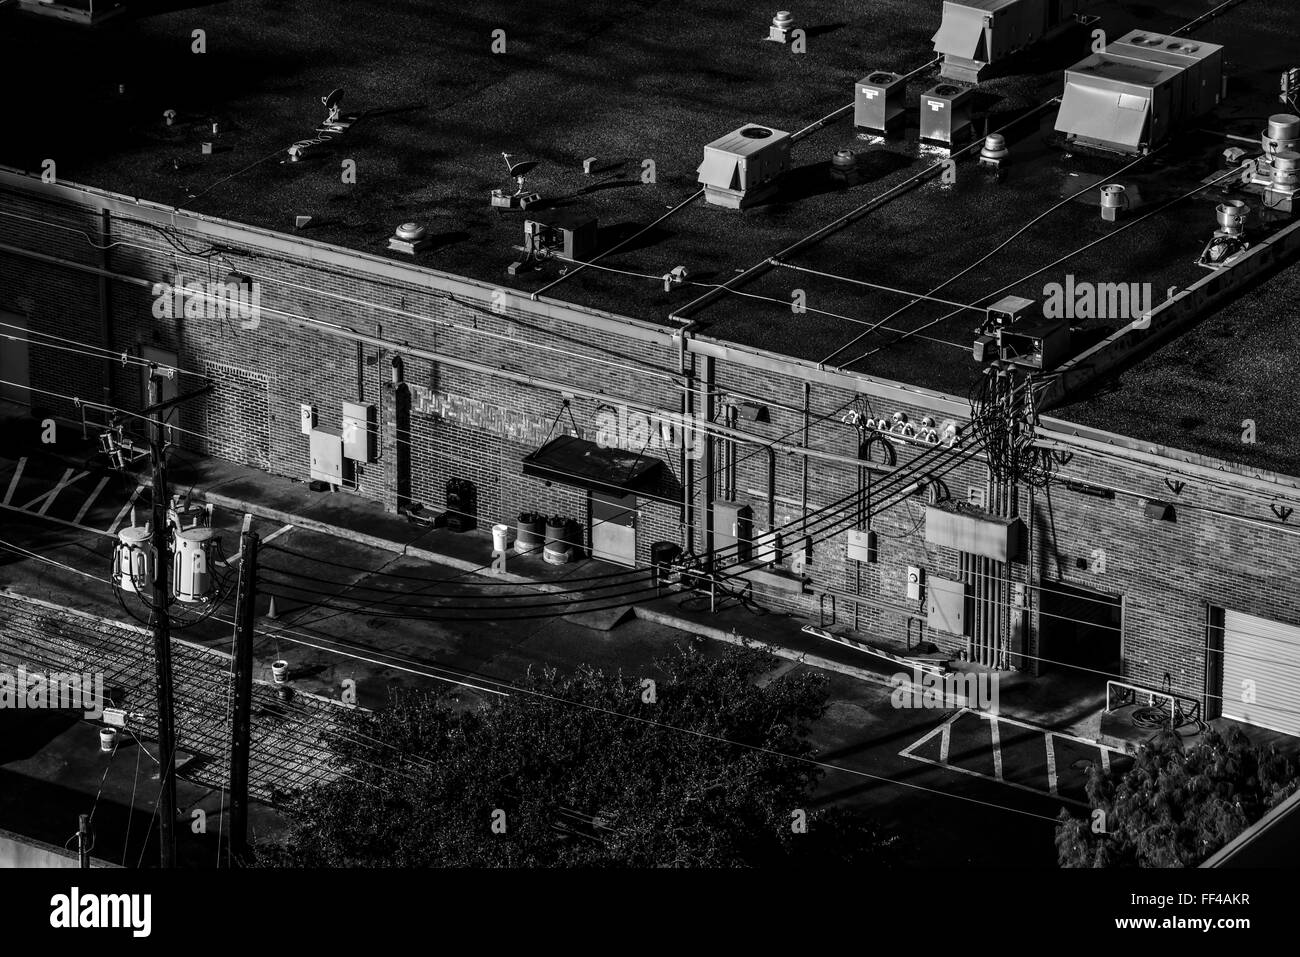 Houston Backstreet schwarz-weiß Stimmung Bild Stockfoto